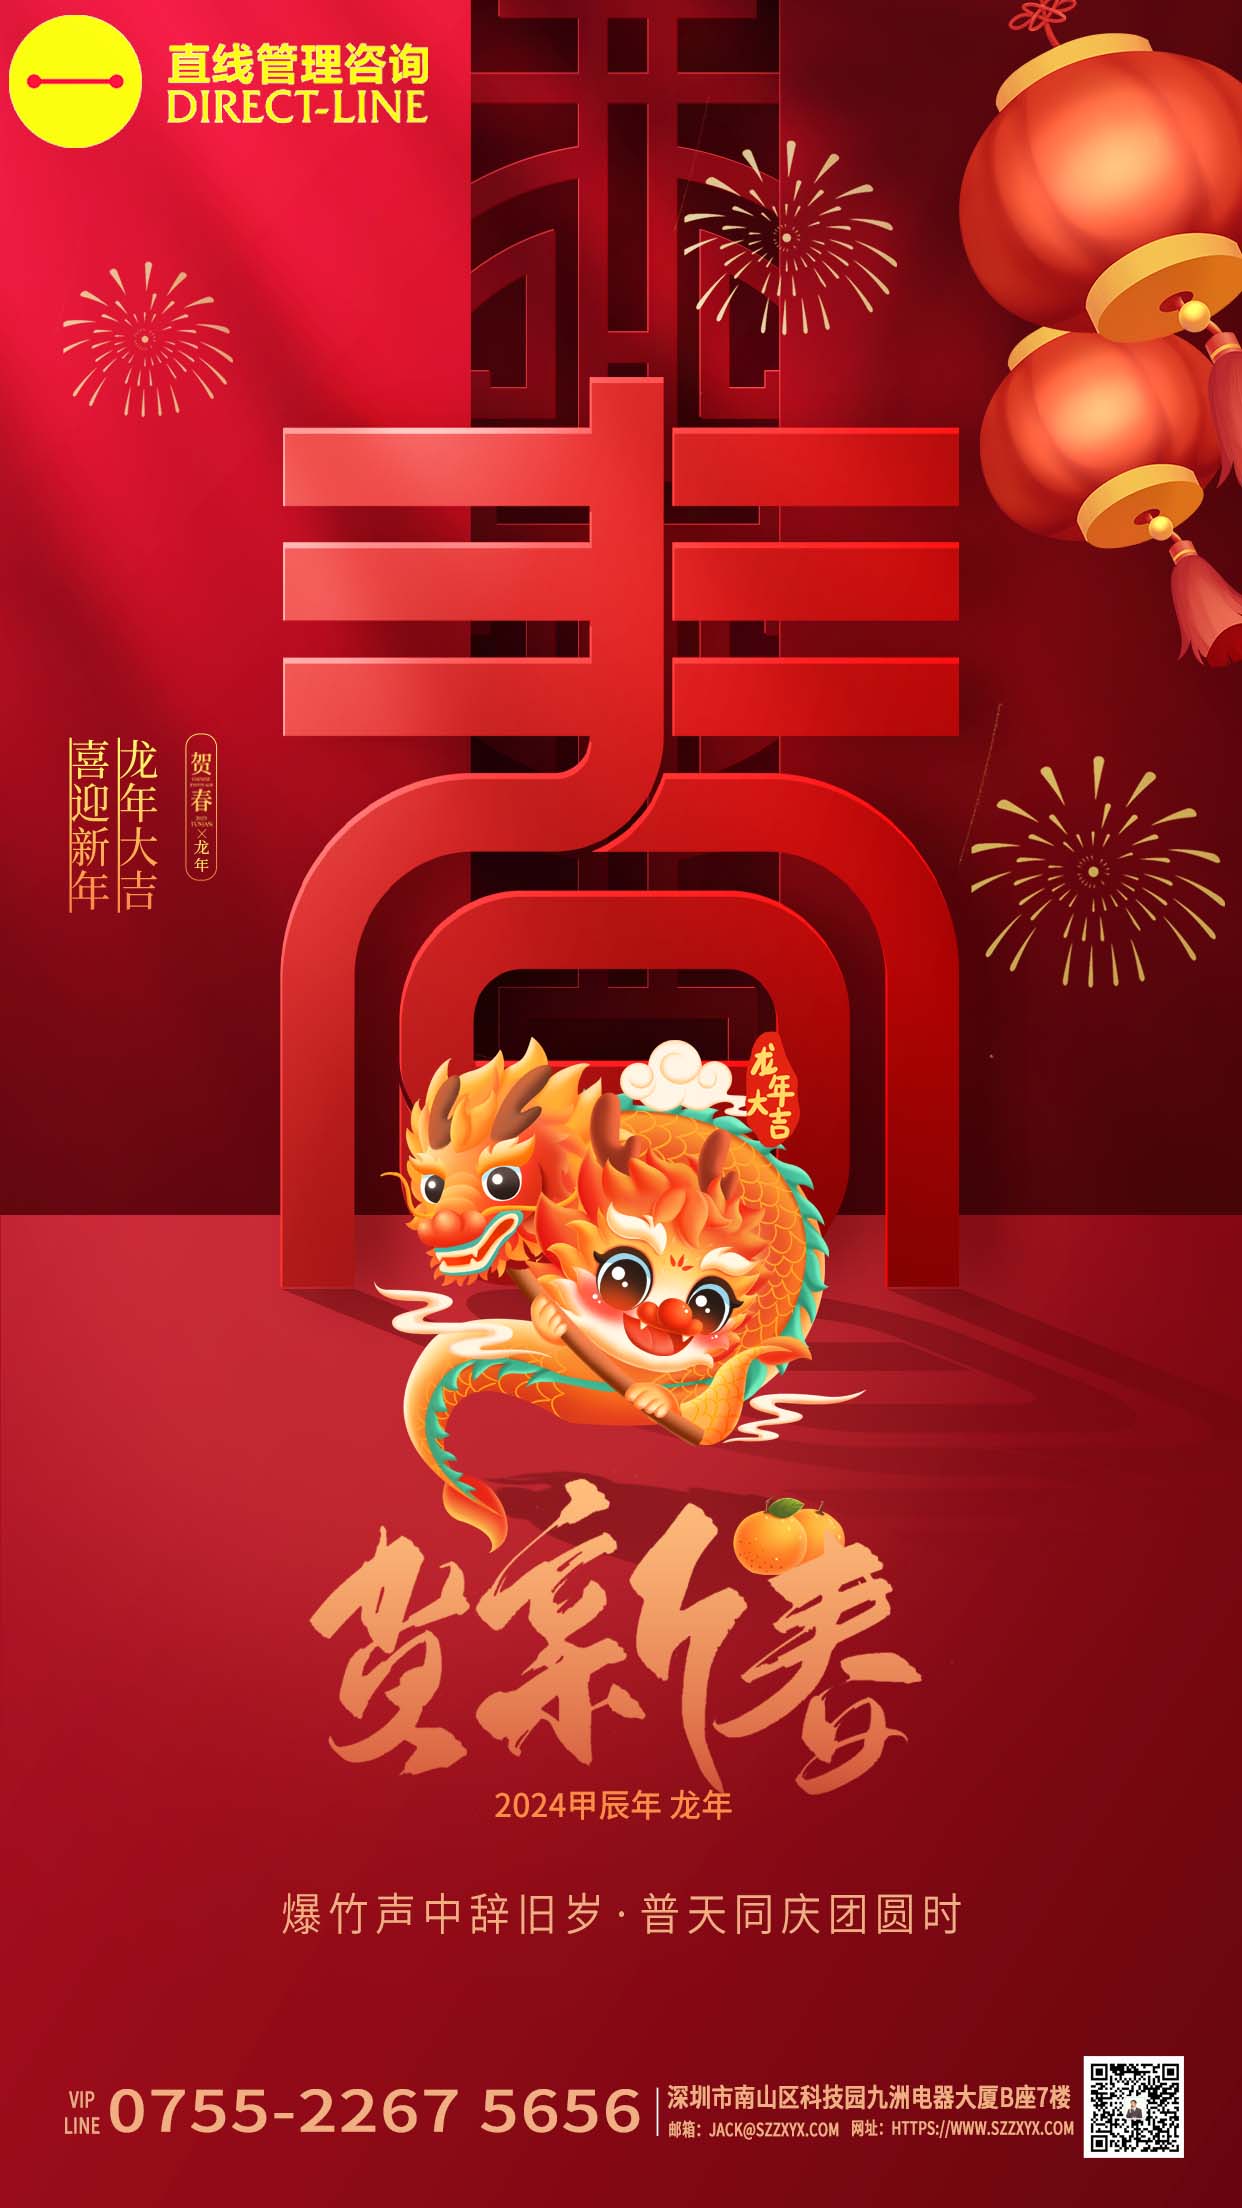 深圳英超联赛买足球管理咨询恭祝大家“喜迎新年,龙年大吉”!